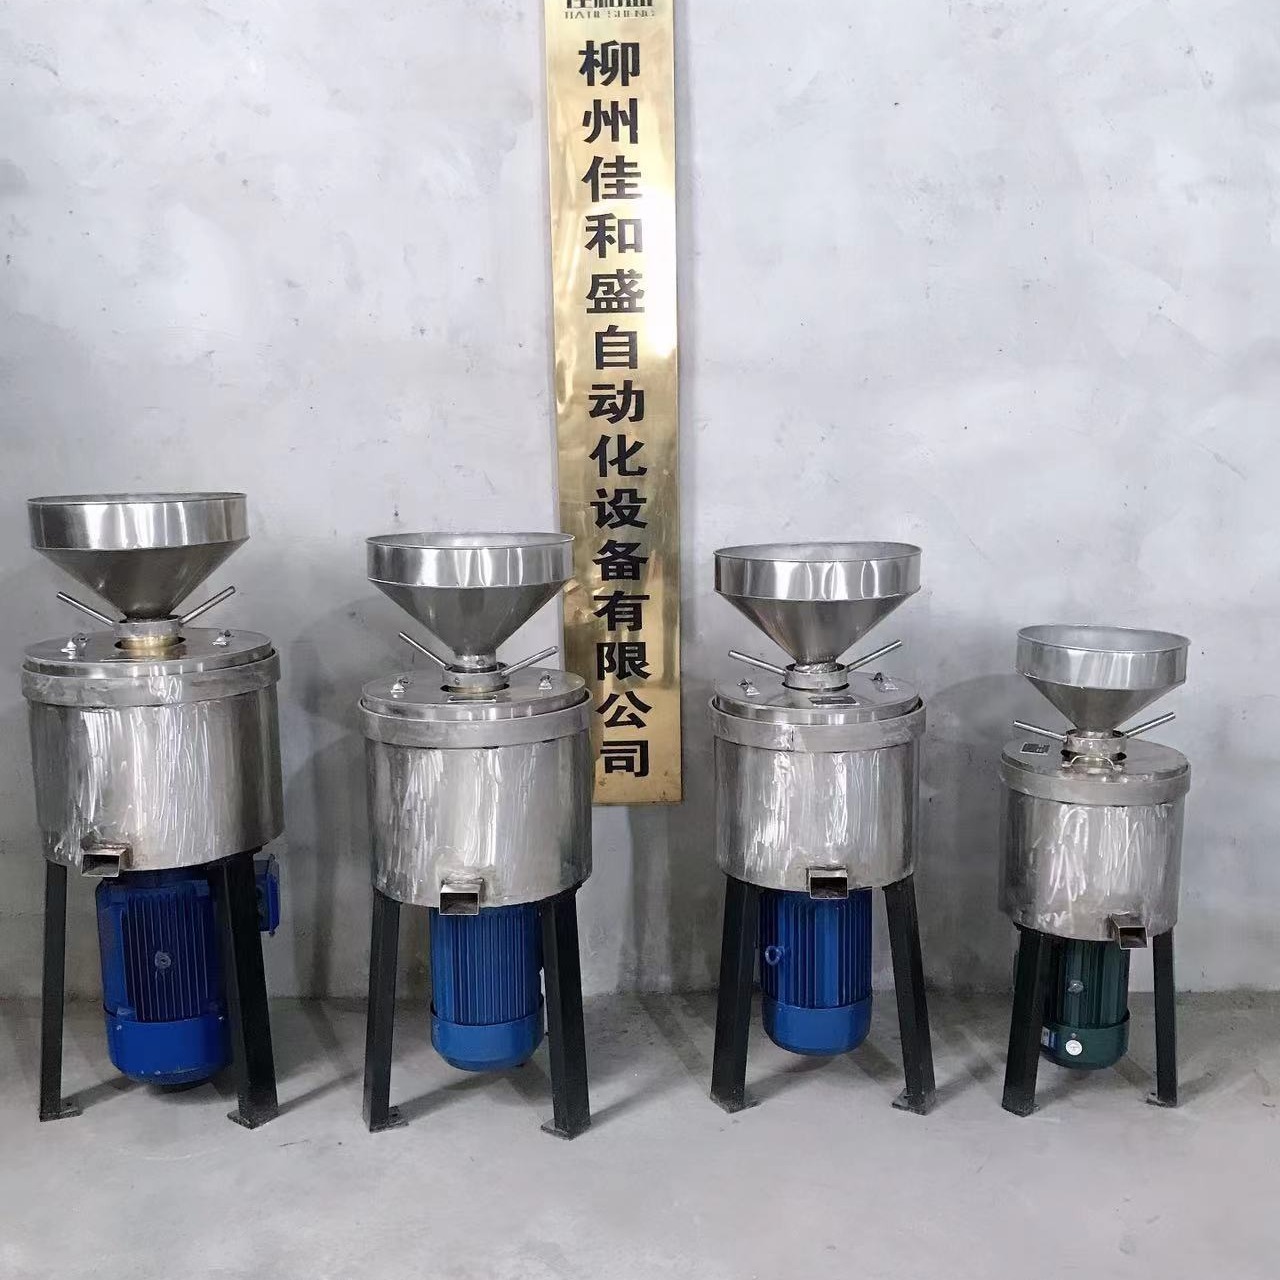 立式磨浆机DM-LZ400型 不锈钢大米黄豆磨浆设备 卫生 平稳可靠 支持定制